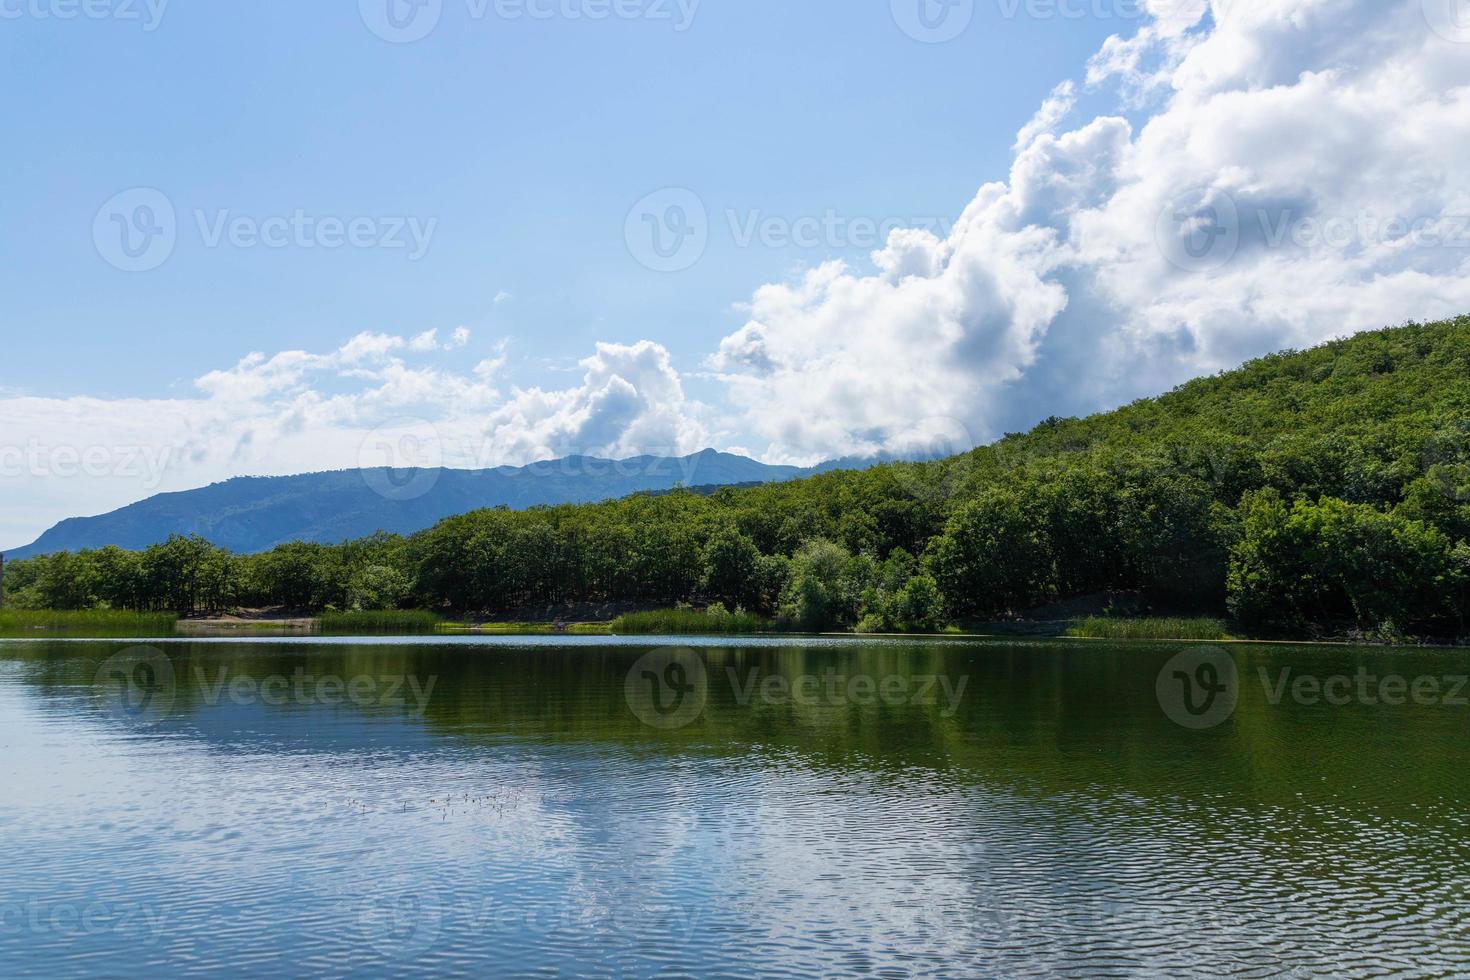 bergen omringen het bergmeer. het oppervlak van het meer reflecteert zonlicht. landschap foto